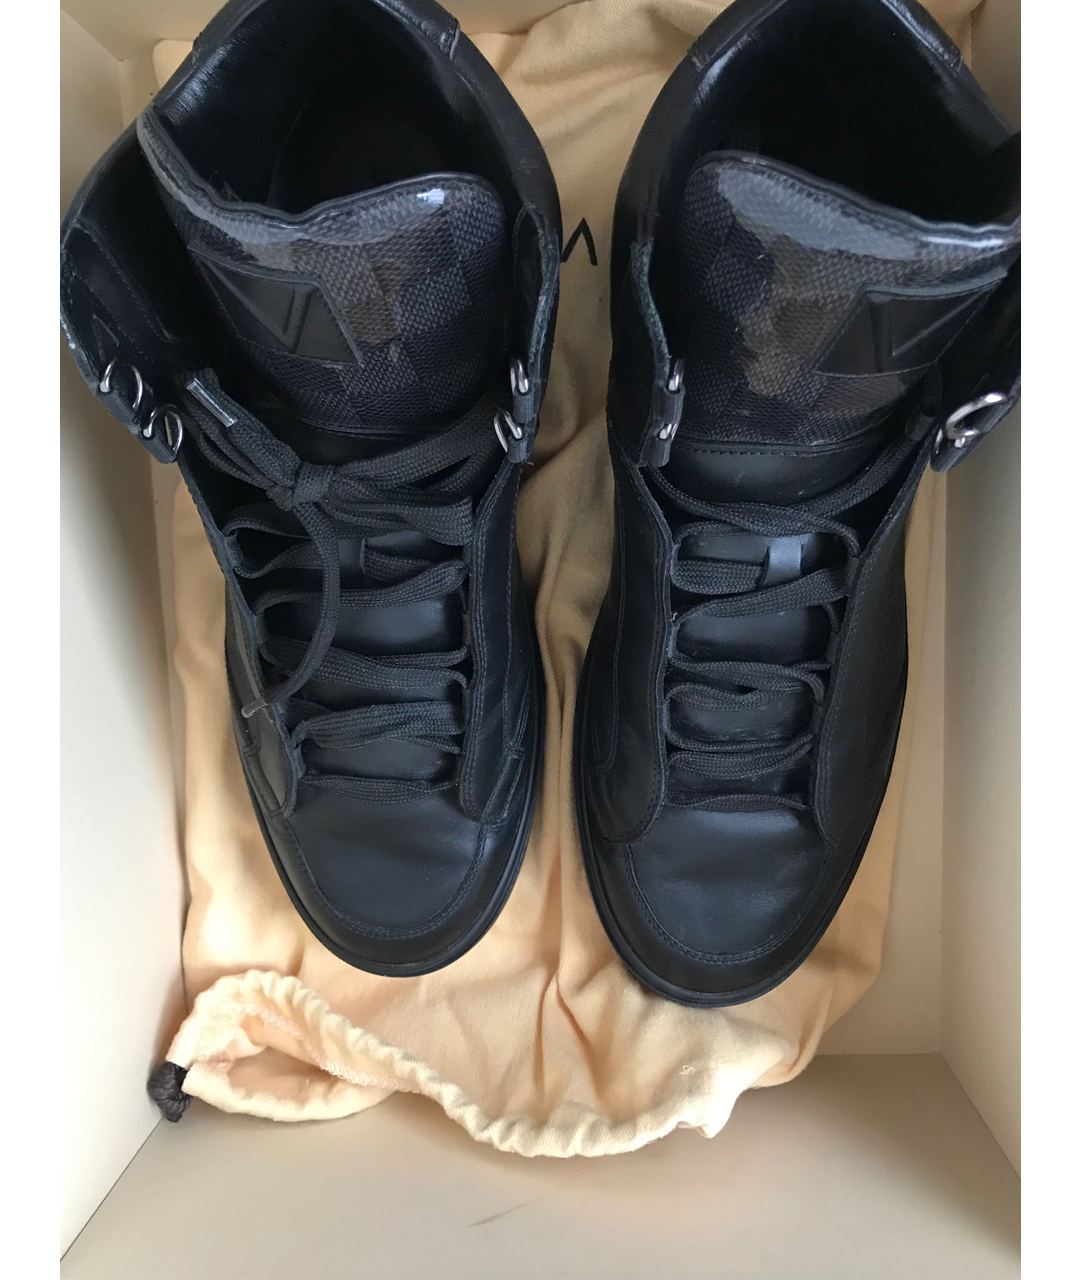 LOUIS VUITTON PRE-OWNED Черные кожаные высокие кроссовки / кеды, фото 8